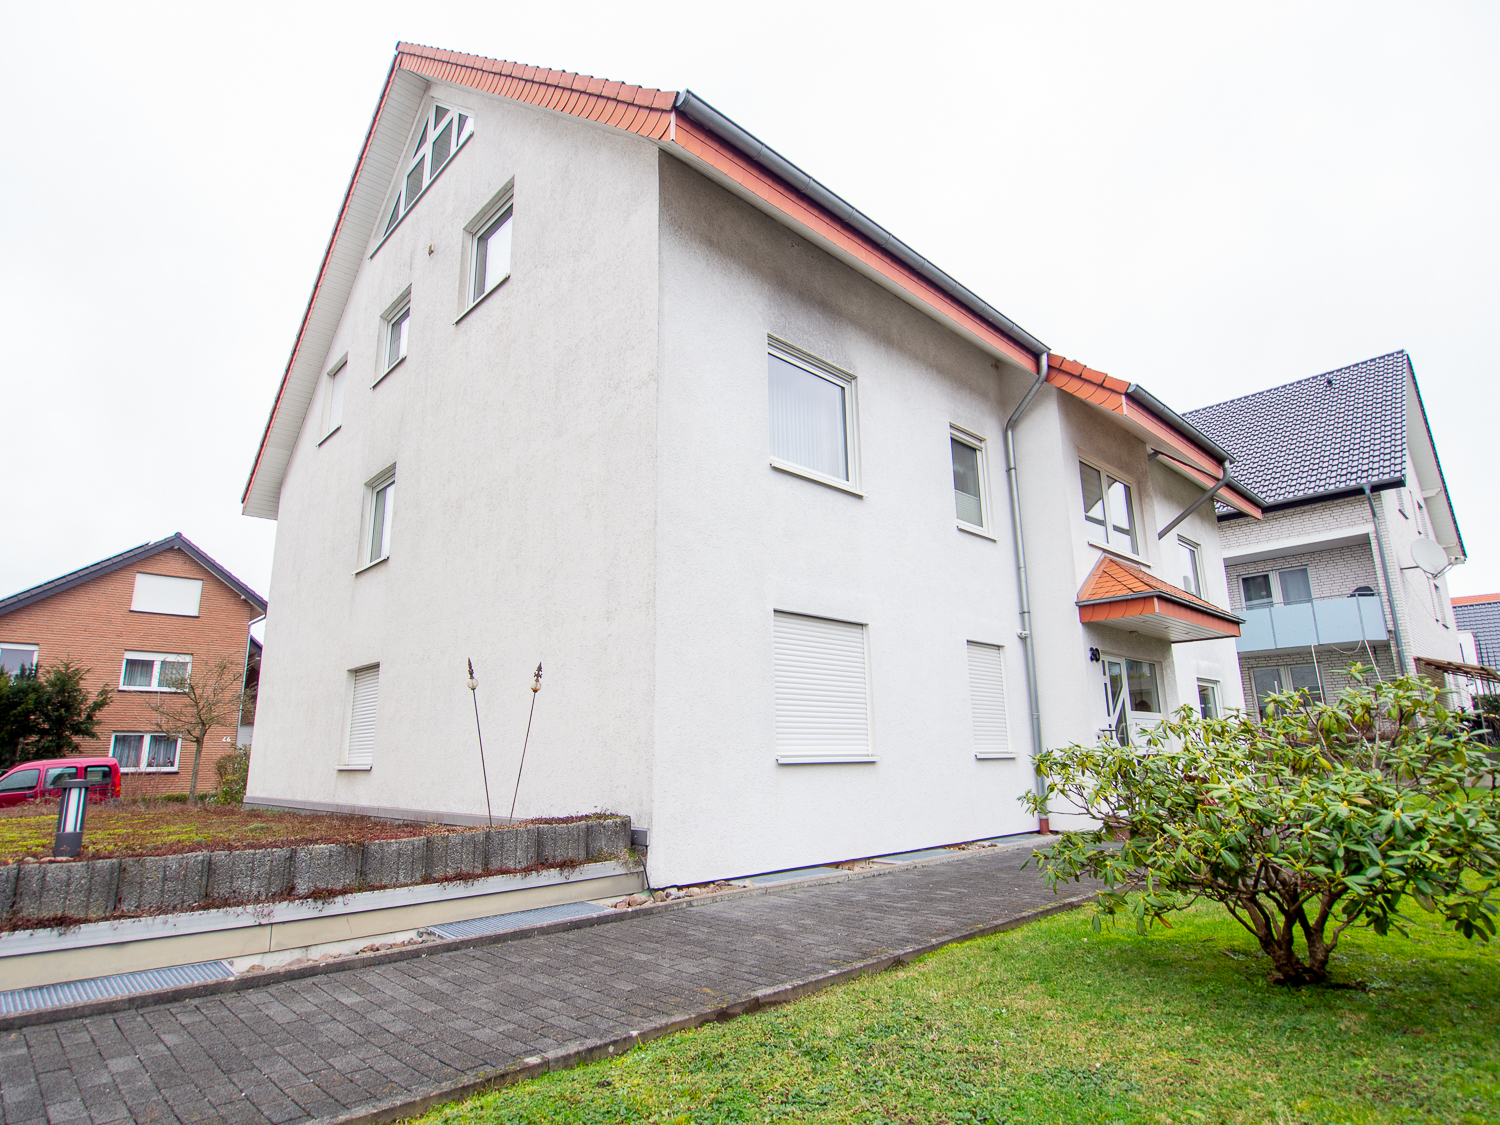 3-Zim. Wohnung mit Terrasse in ruhiger Wohnlage inkl. Tiefgarage, zentrumsnah in Bad Salzuflen